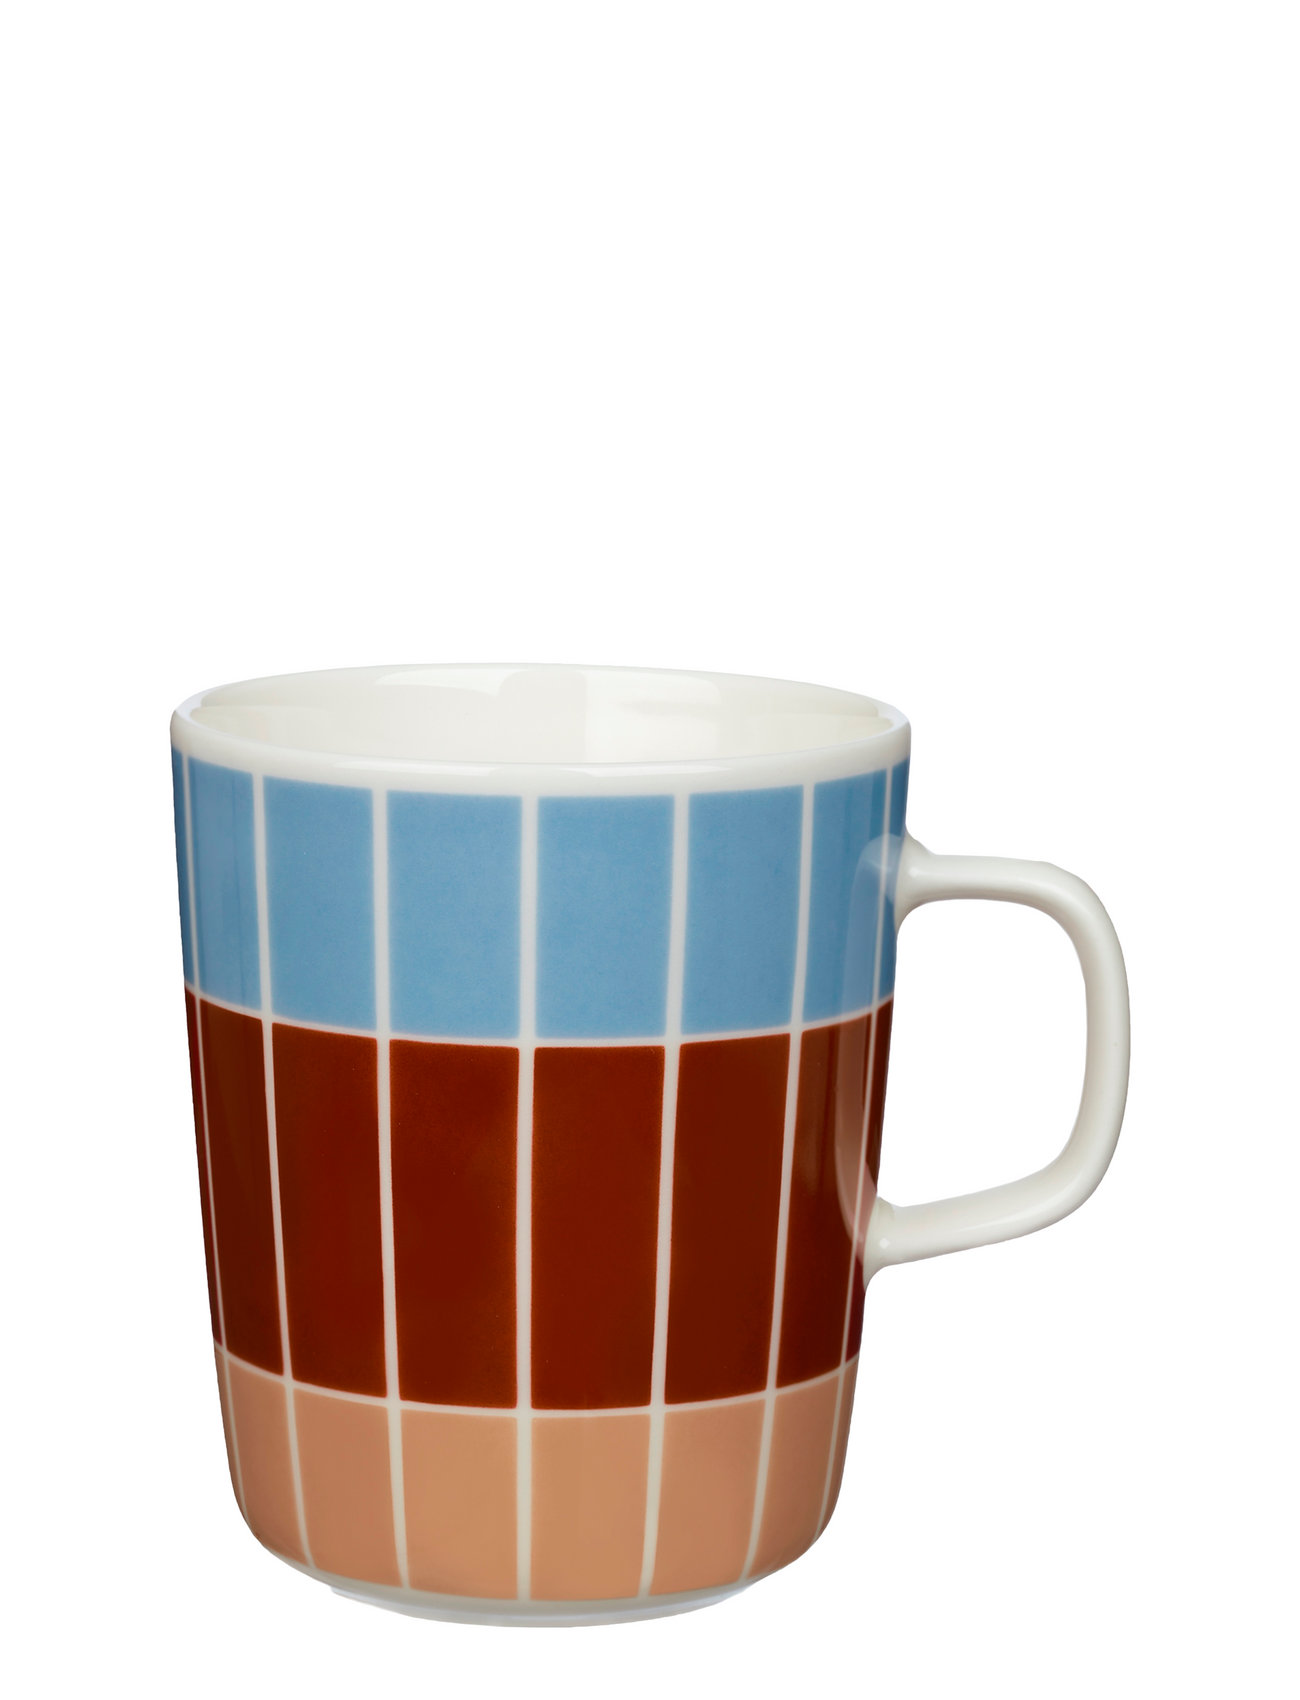 Tiiliskivi Mug 2,5 Dl Home Tableware Cups & Mugs Coffee Cups Multi/patterned Marimekko Home